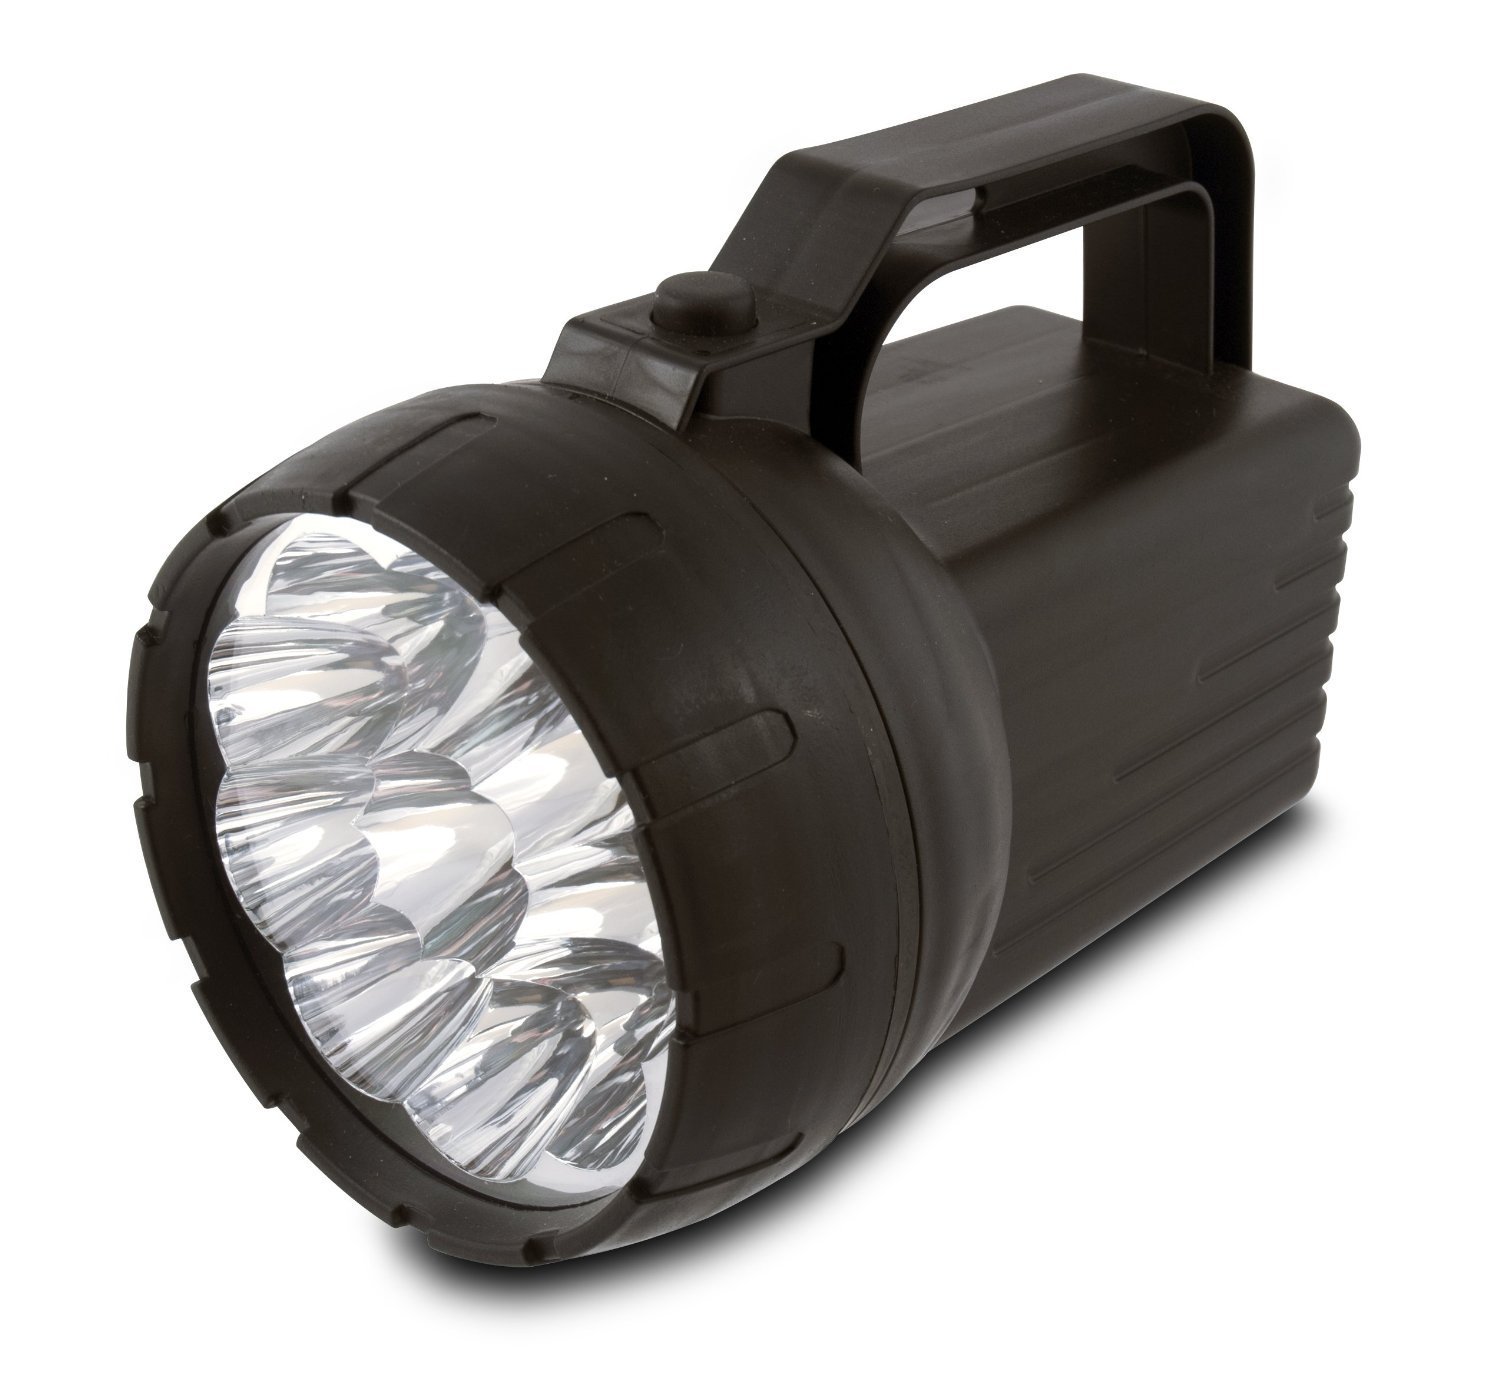 Rayovac Value Bright 6V 10-LED Lantern Only $4.92! (Reg $11.97)